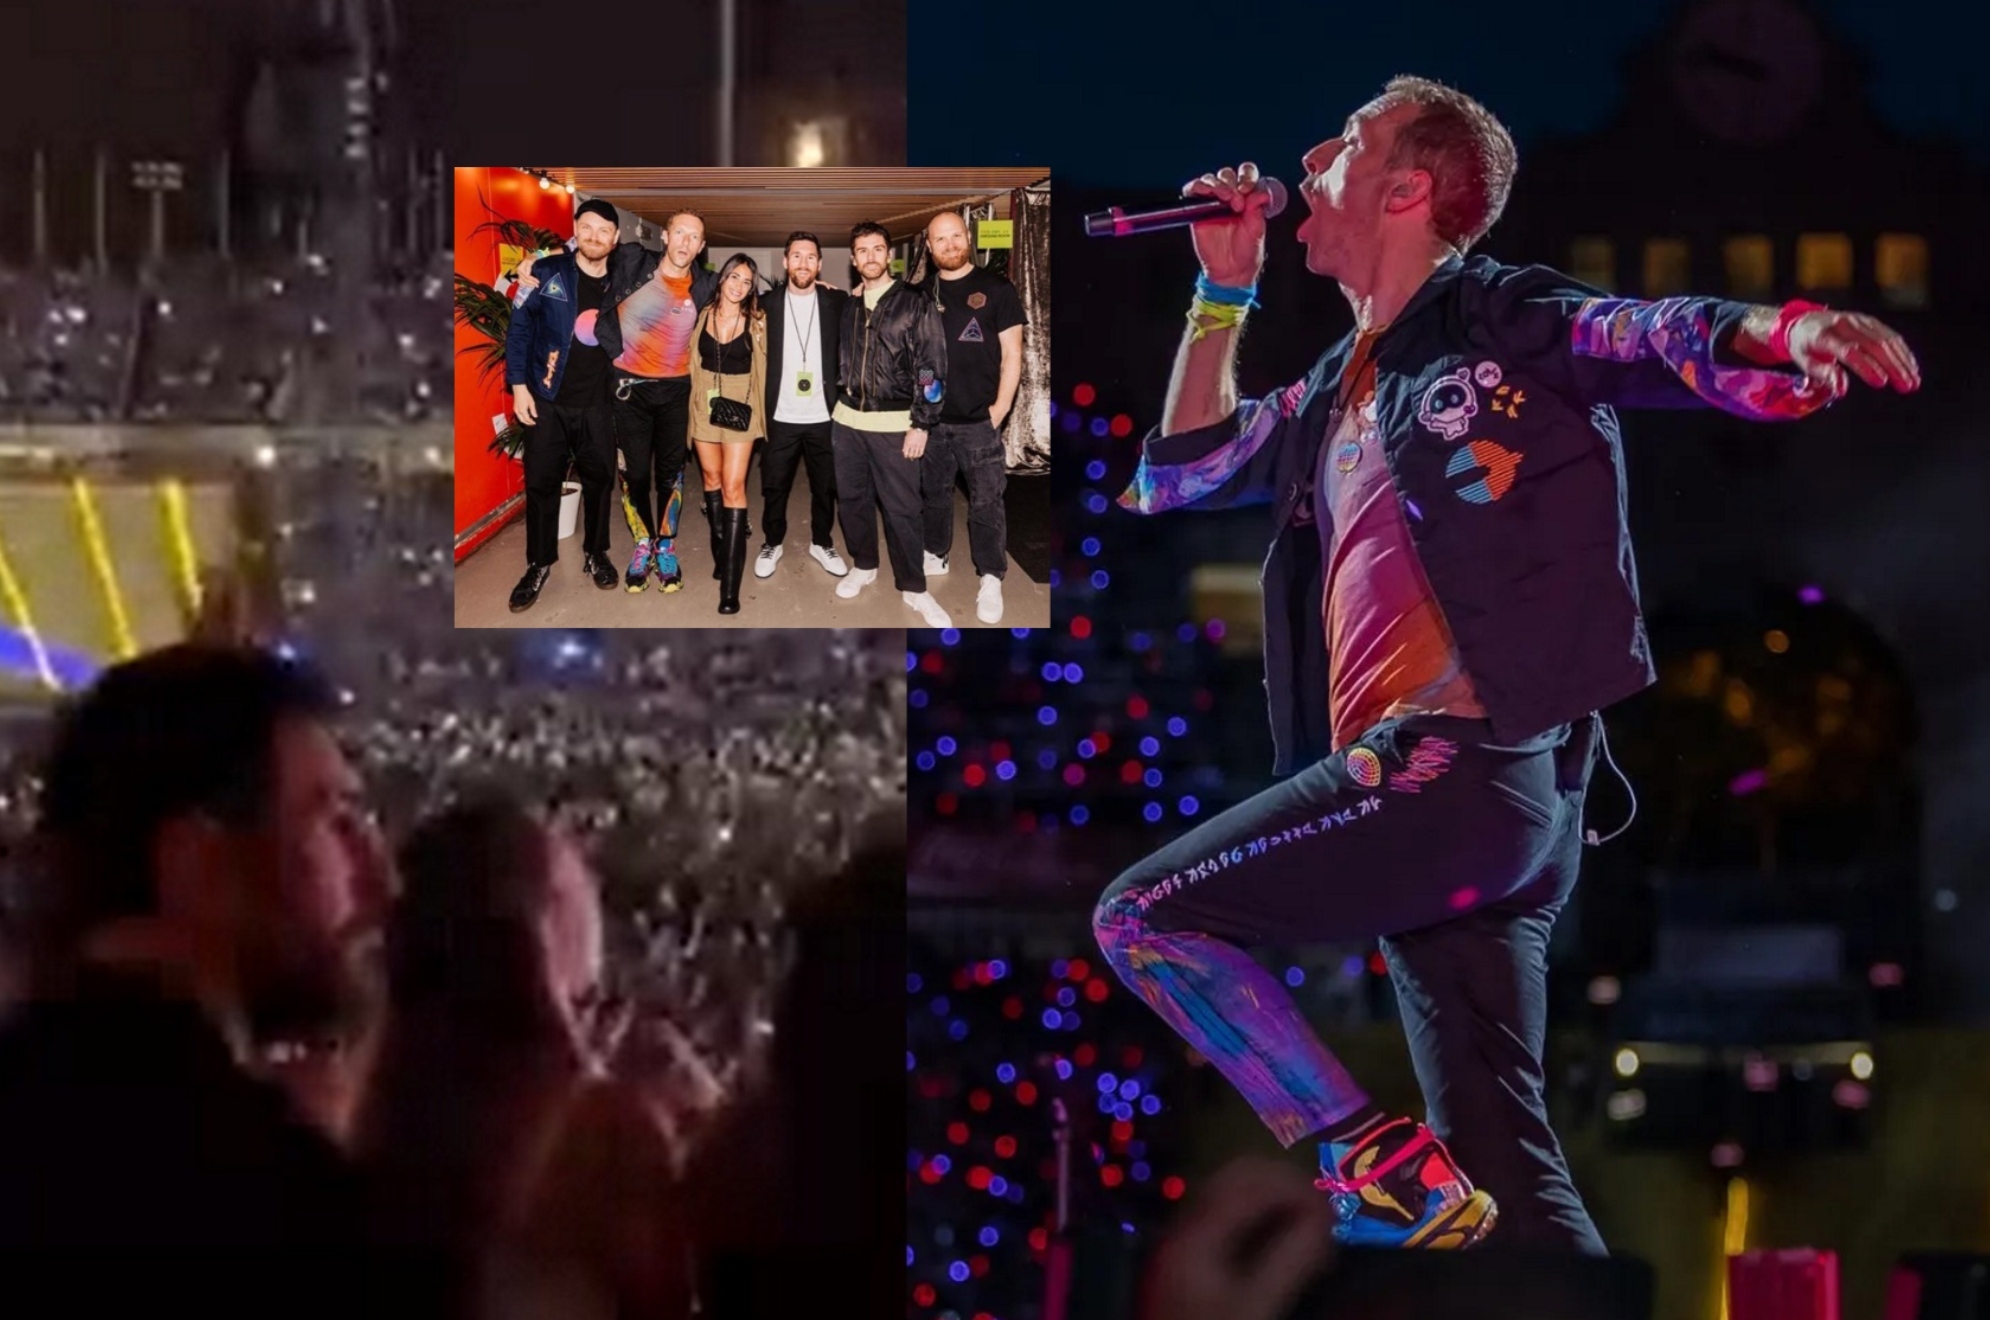 Messi termina ovacionado en el concierto de Coldplay en Barcelona